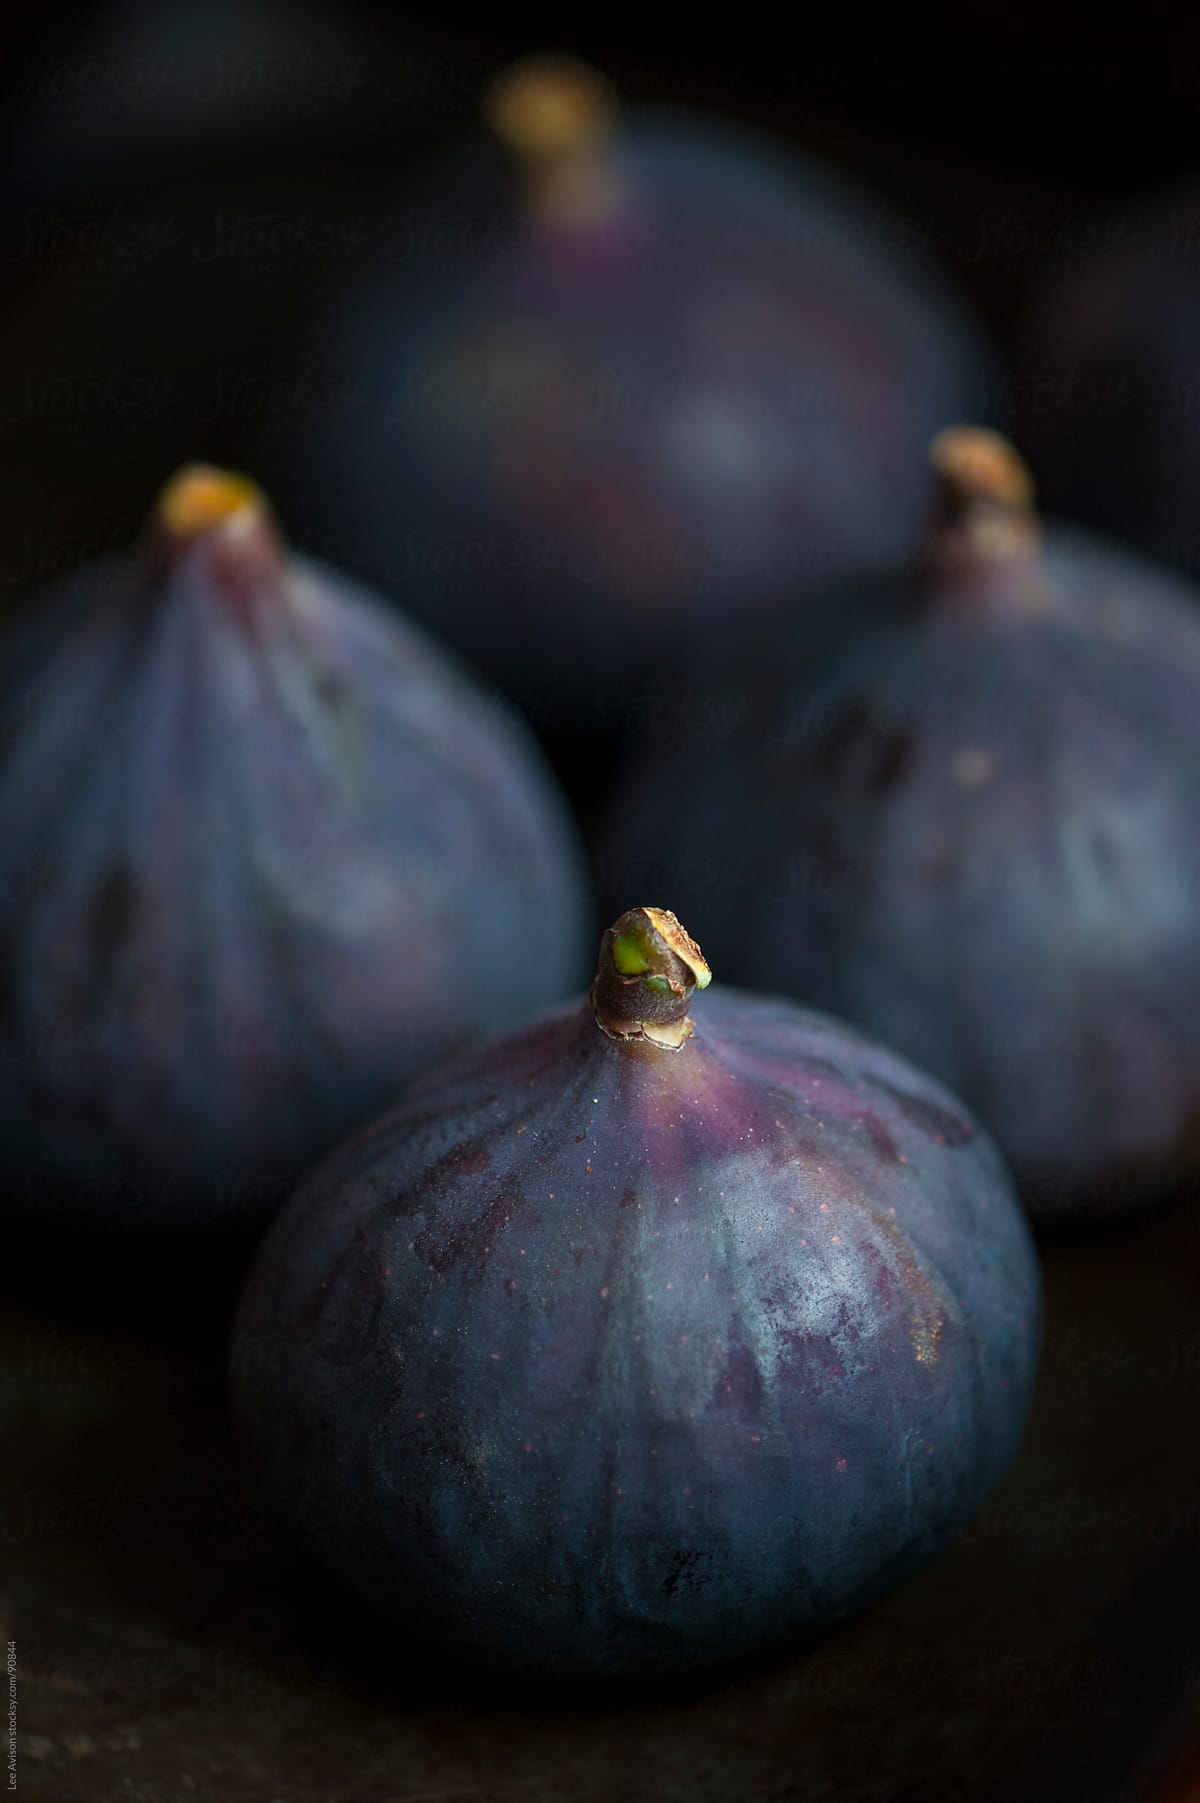 fresh ripe purple figs arranged for baking